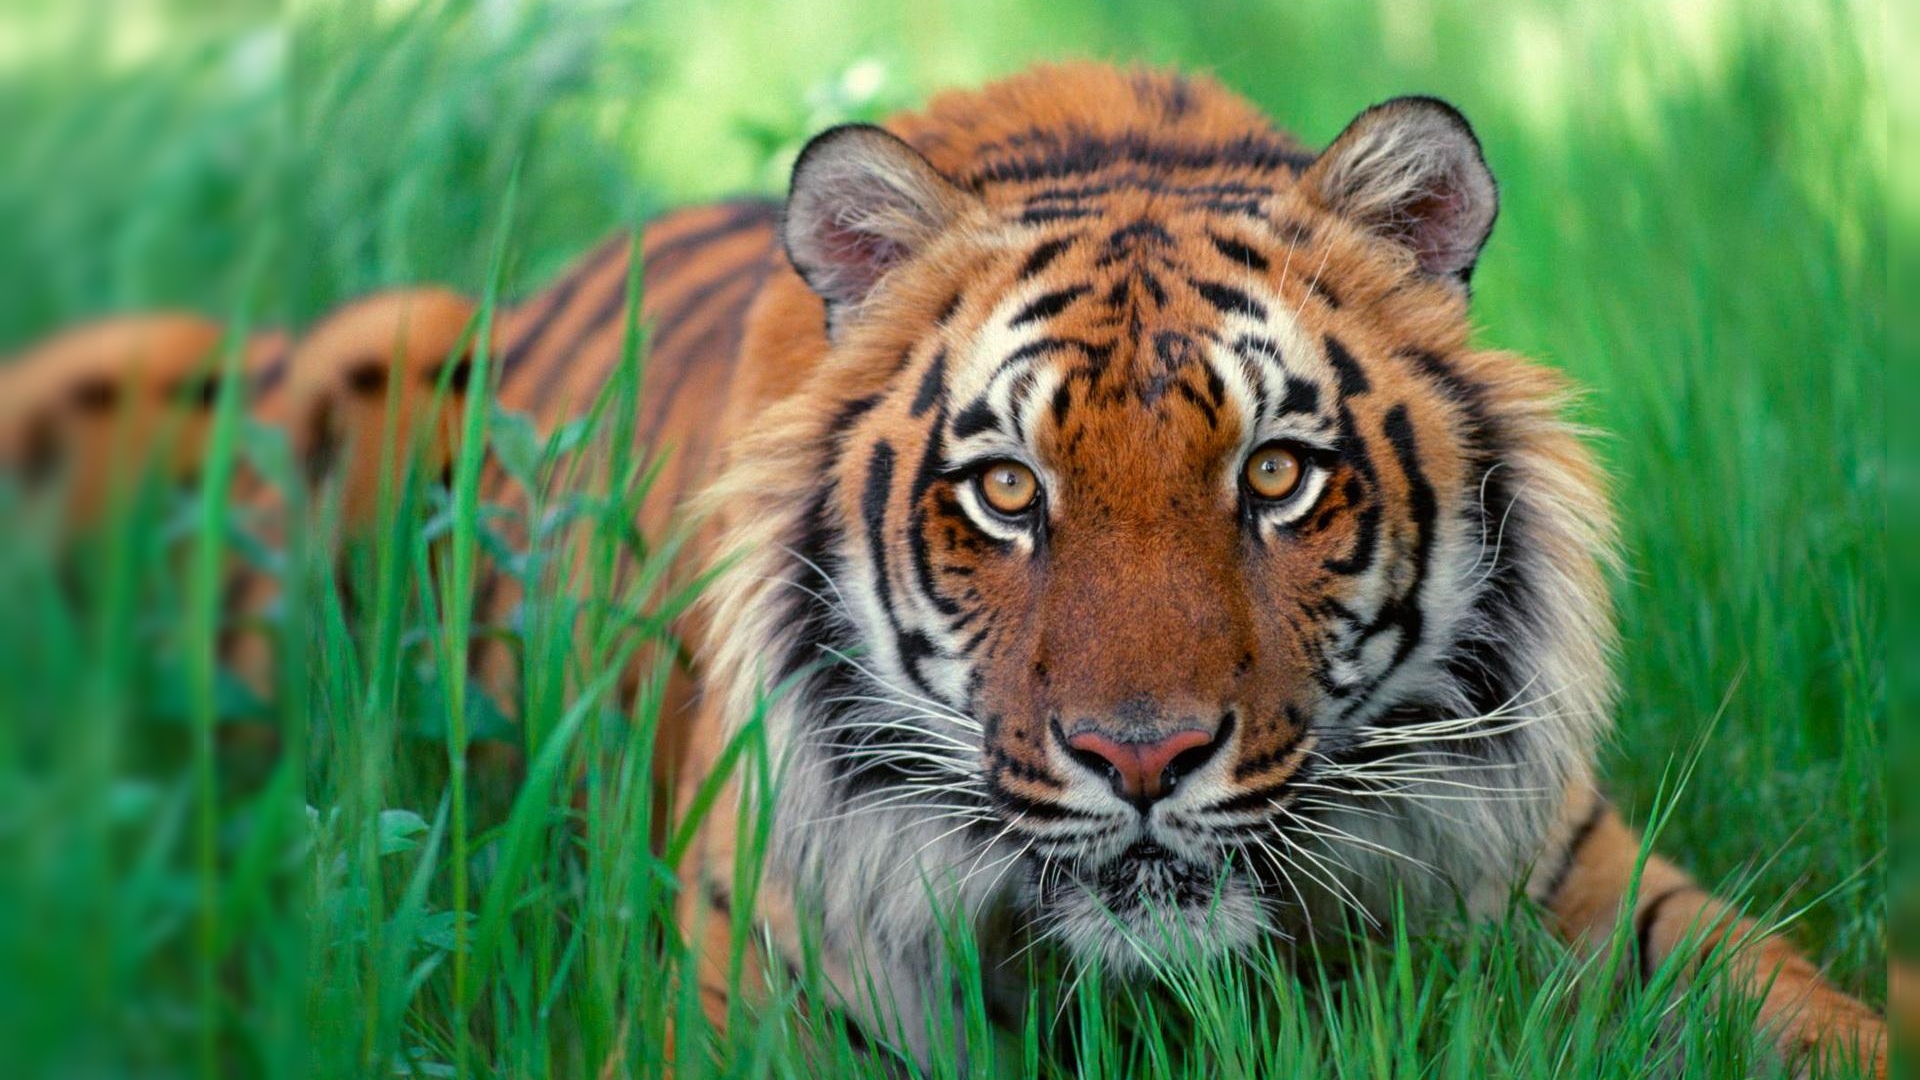 Wallpaper Desktop Tiger Detroit Tigers